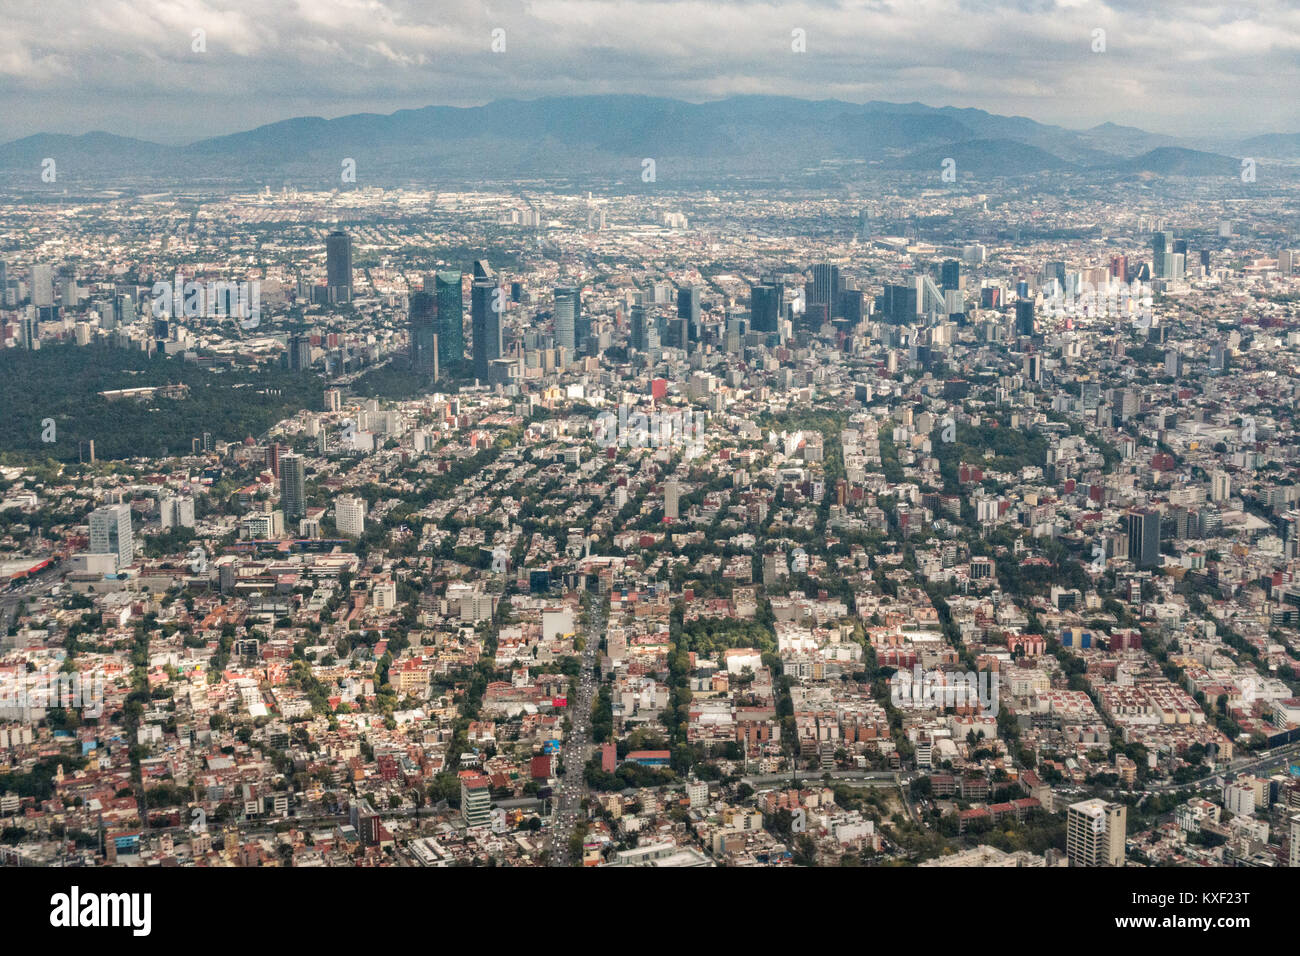 Luftbild zeigt den Dunst der Verschmutzung über die Wolkenkratzer entlang des Paseo de la Reforma 25. Oktober 2017 in der Innenstadt von Mexico City, Mexiko. Mexiko City ist die Hauptstadt von Mexiko und und die bevölkerungsreichste Stadt in Nordamerika. Stockfoto